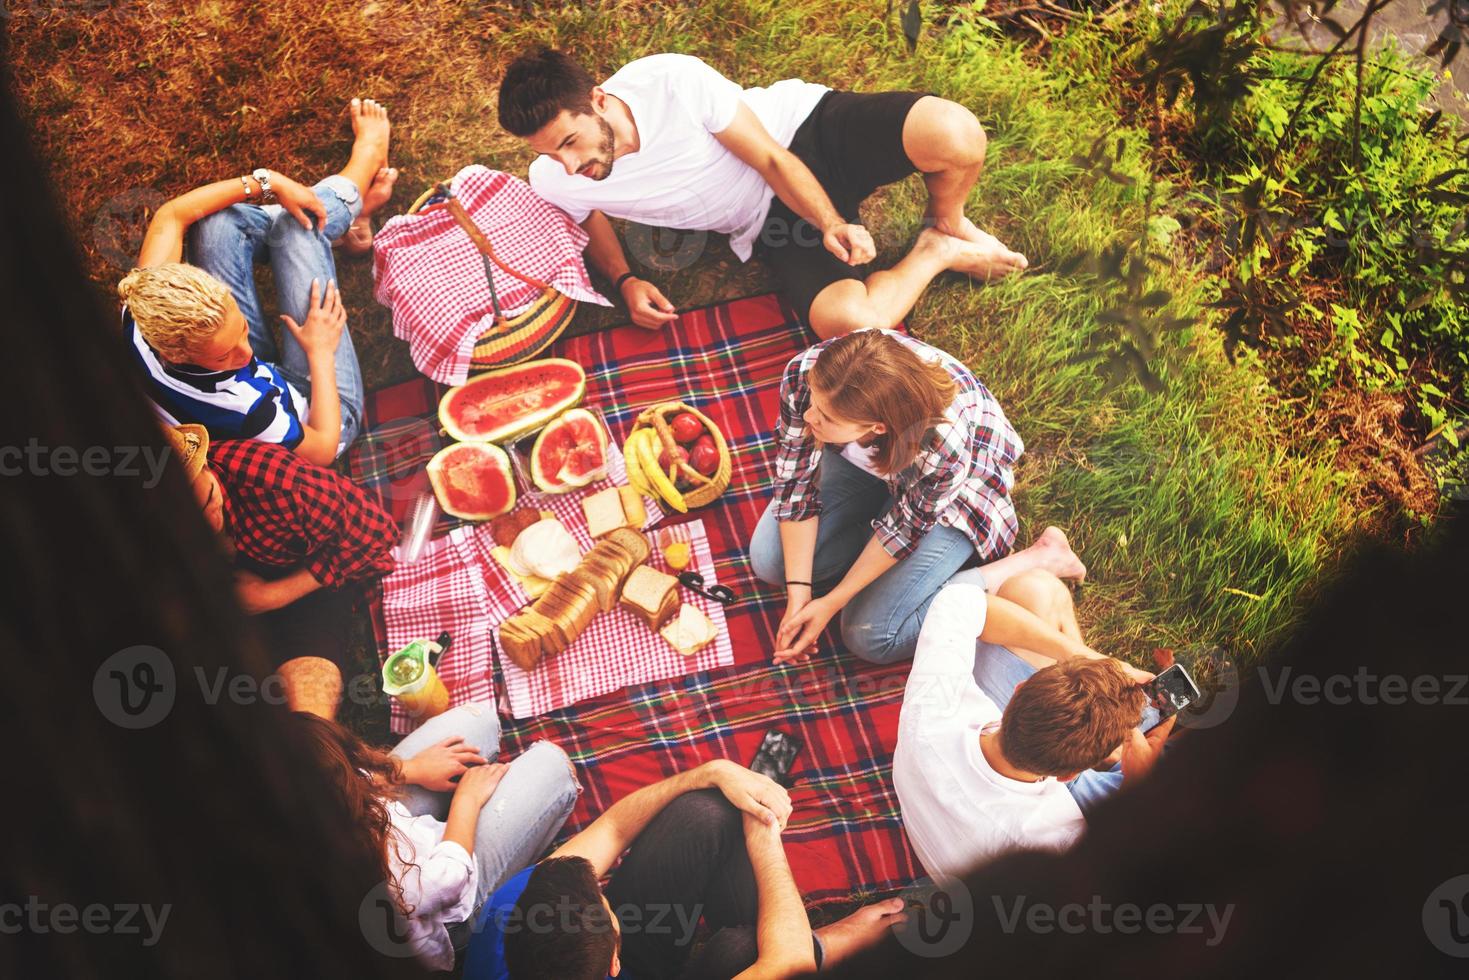 Draufsicht von Gruppenfreunden, die Picknickzeit genießen foto